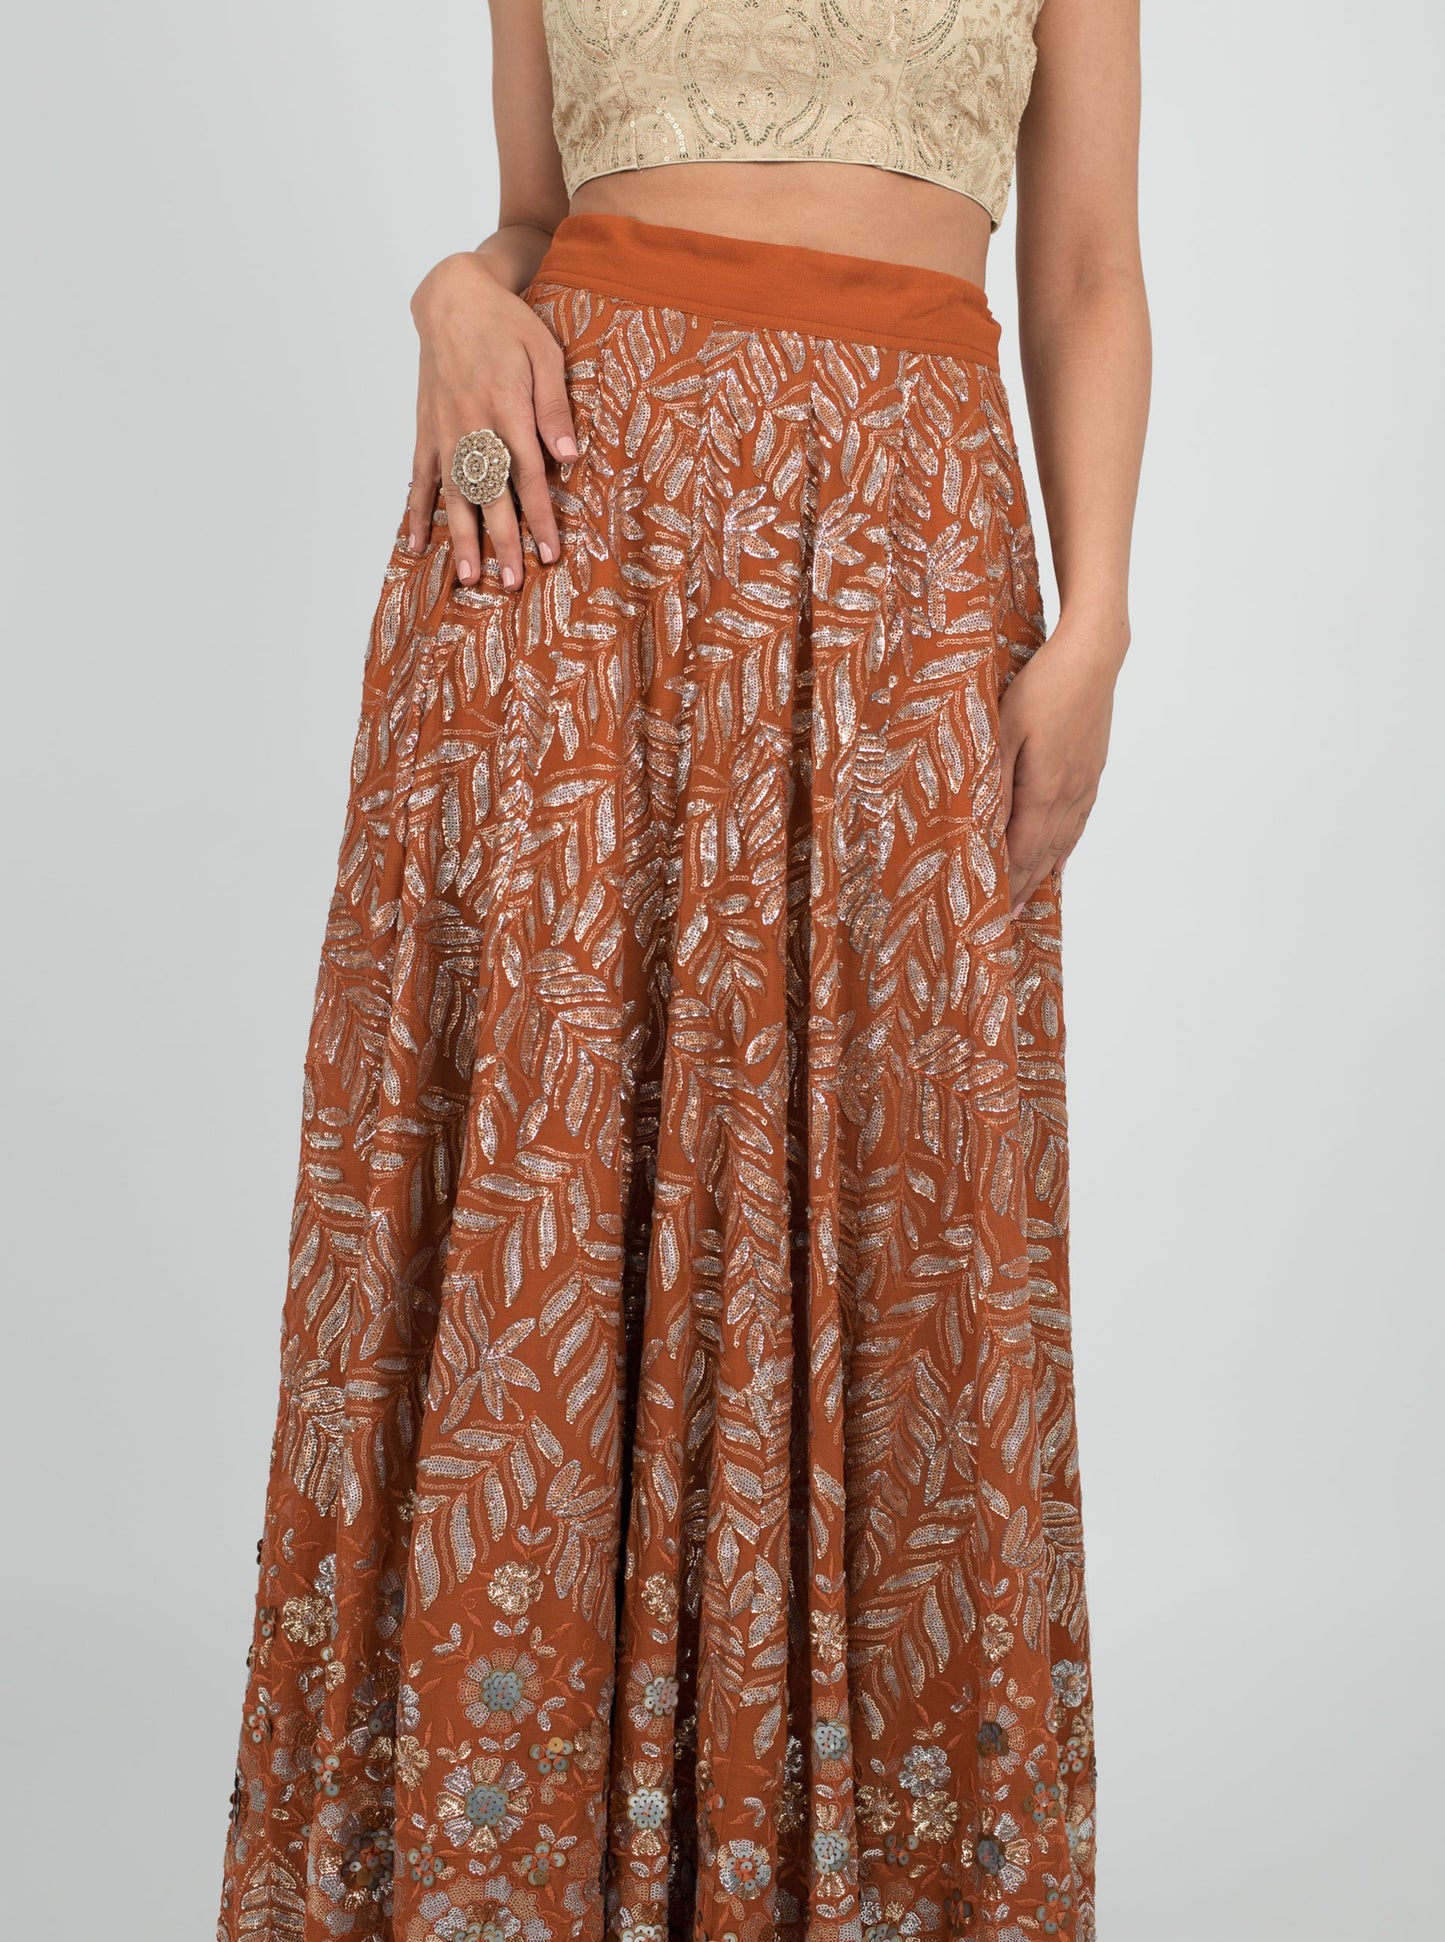 Rustic Bellini Skirt